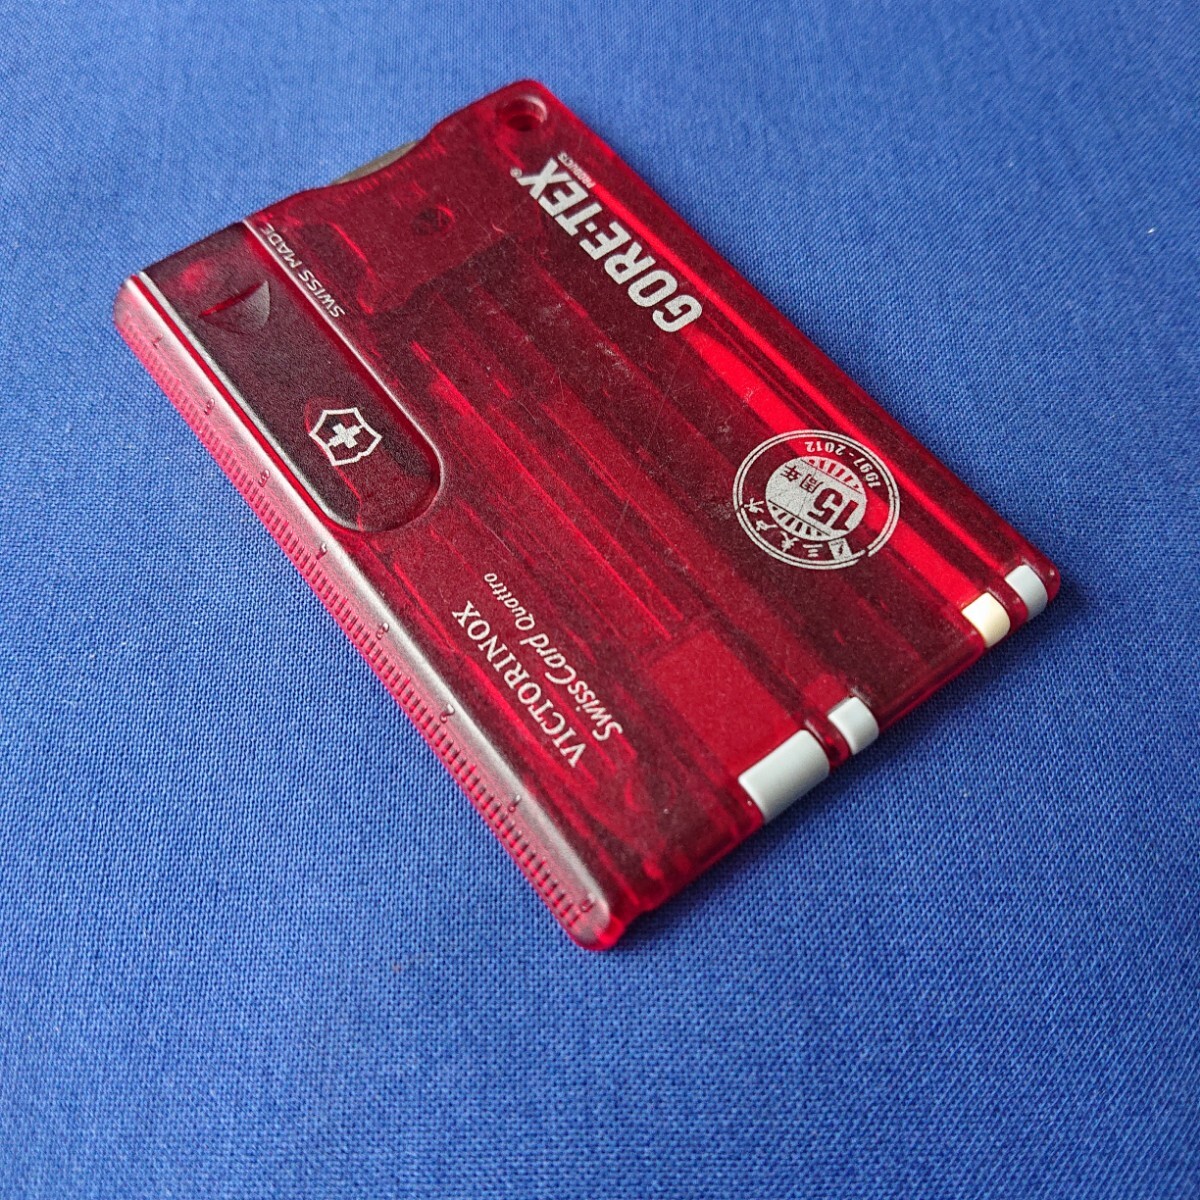 VICTORINOX(ビクトリノックス)Swiss Card Quattro (02)の画像8